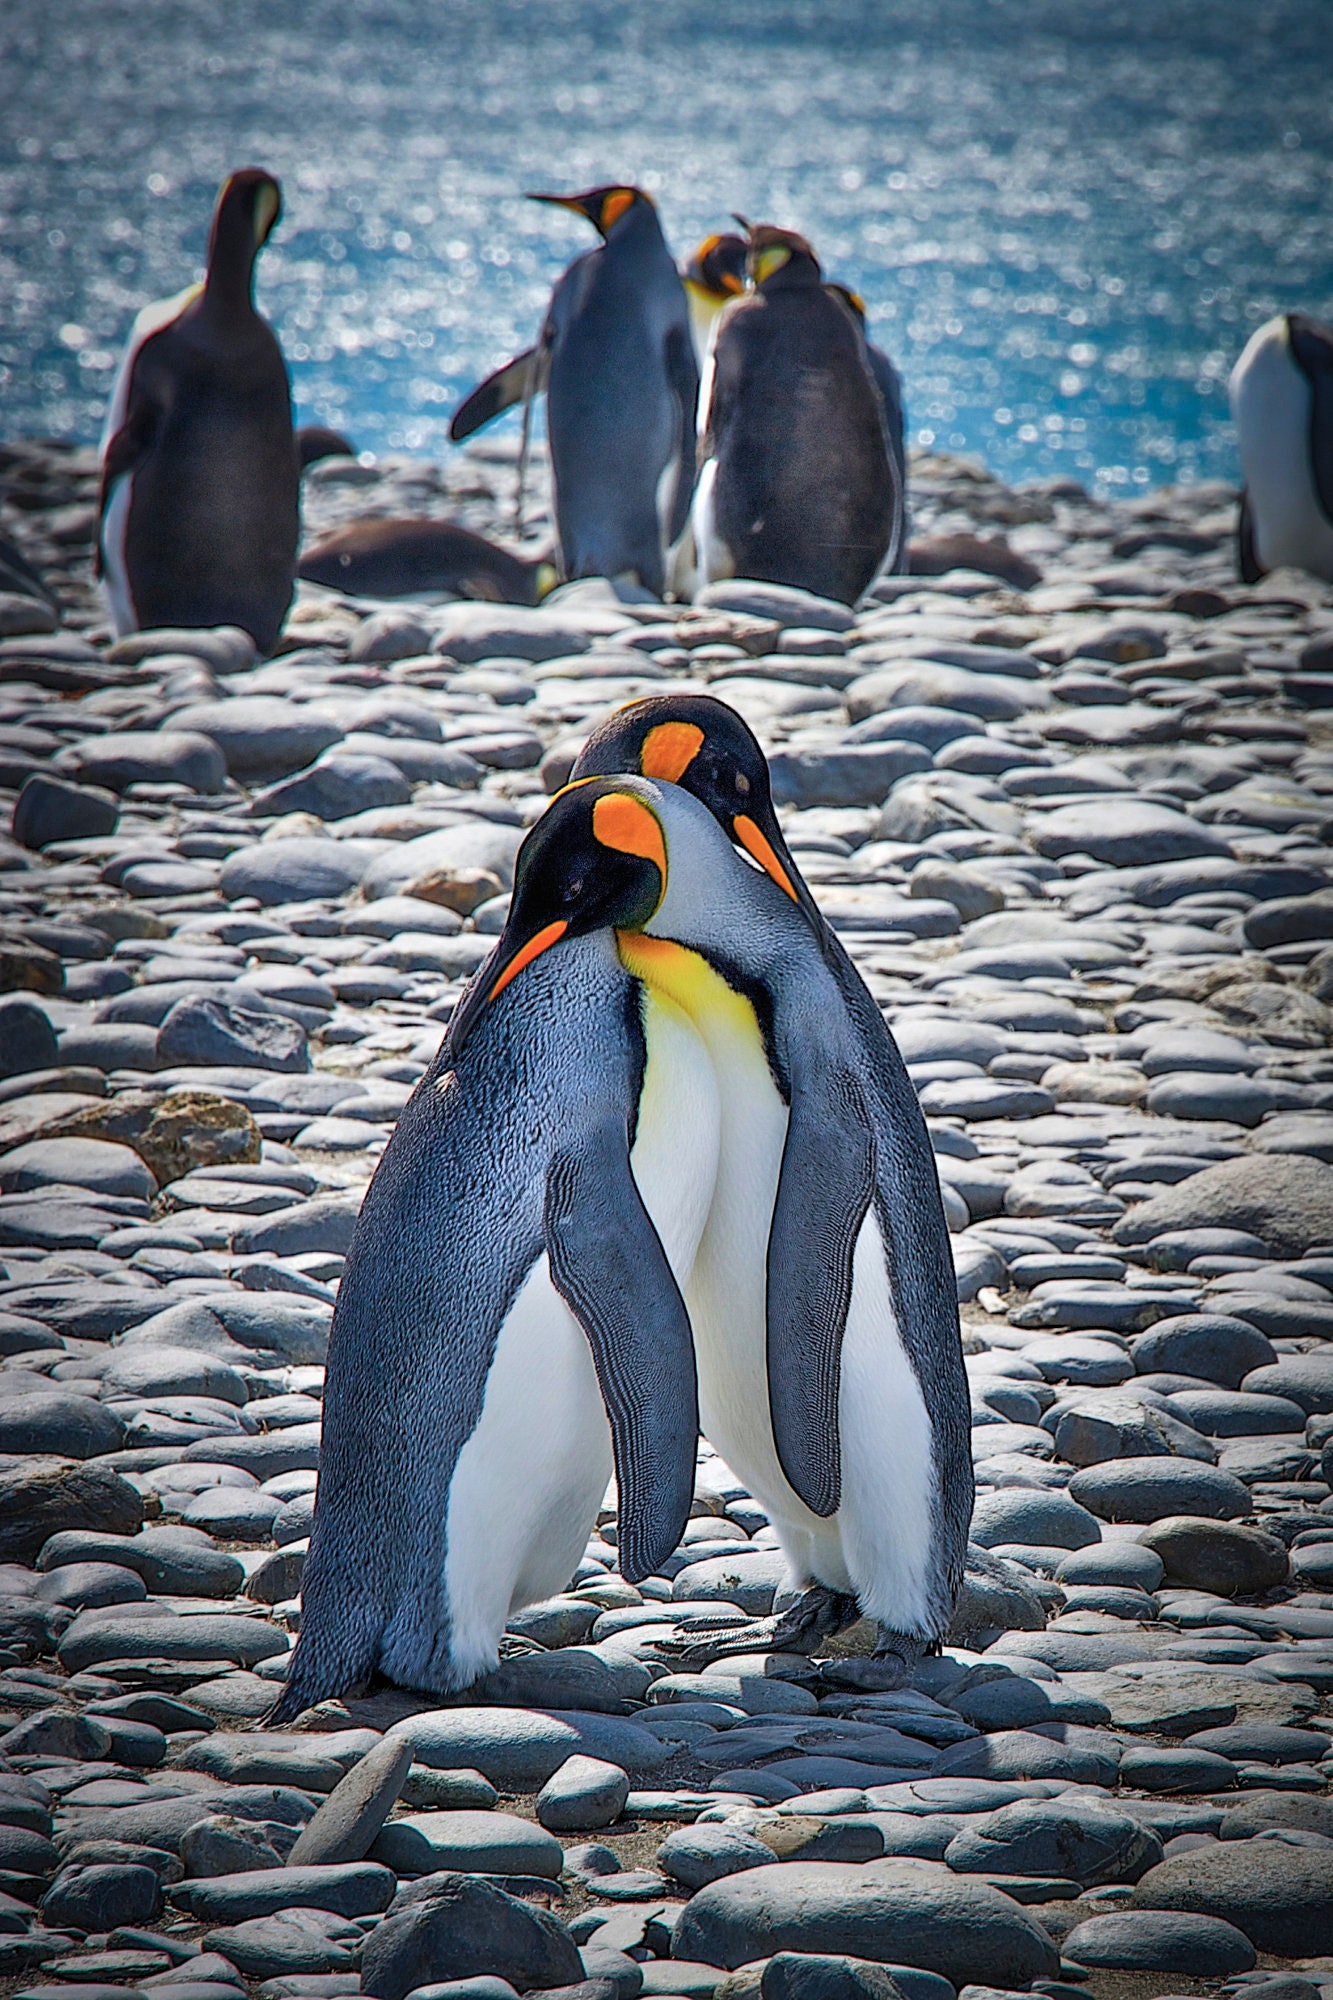 Moment of Penguin